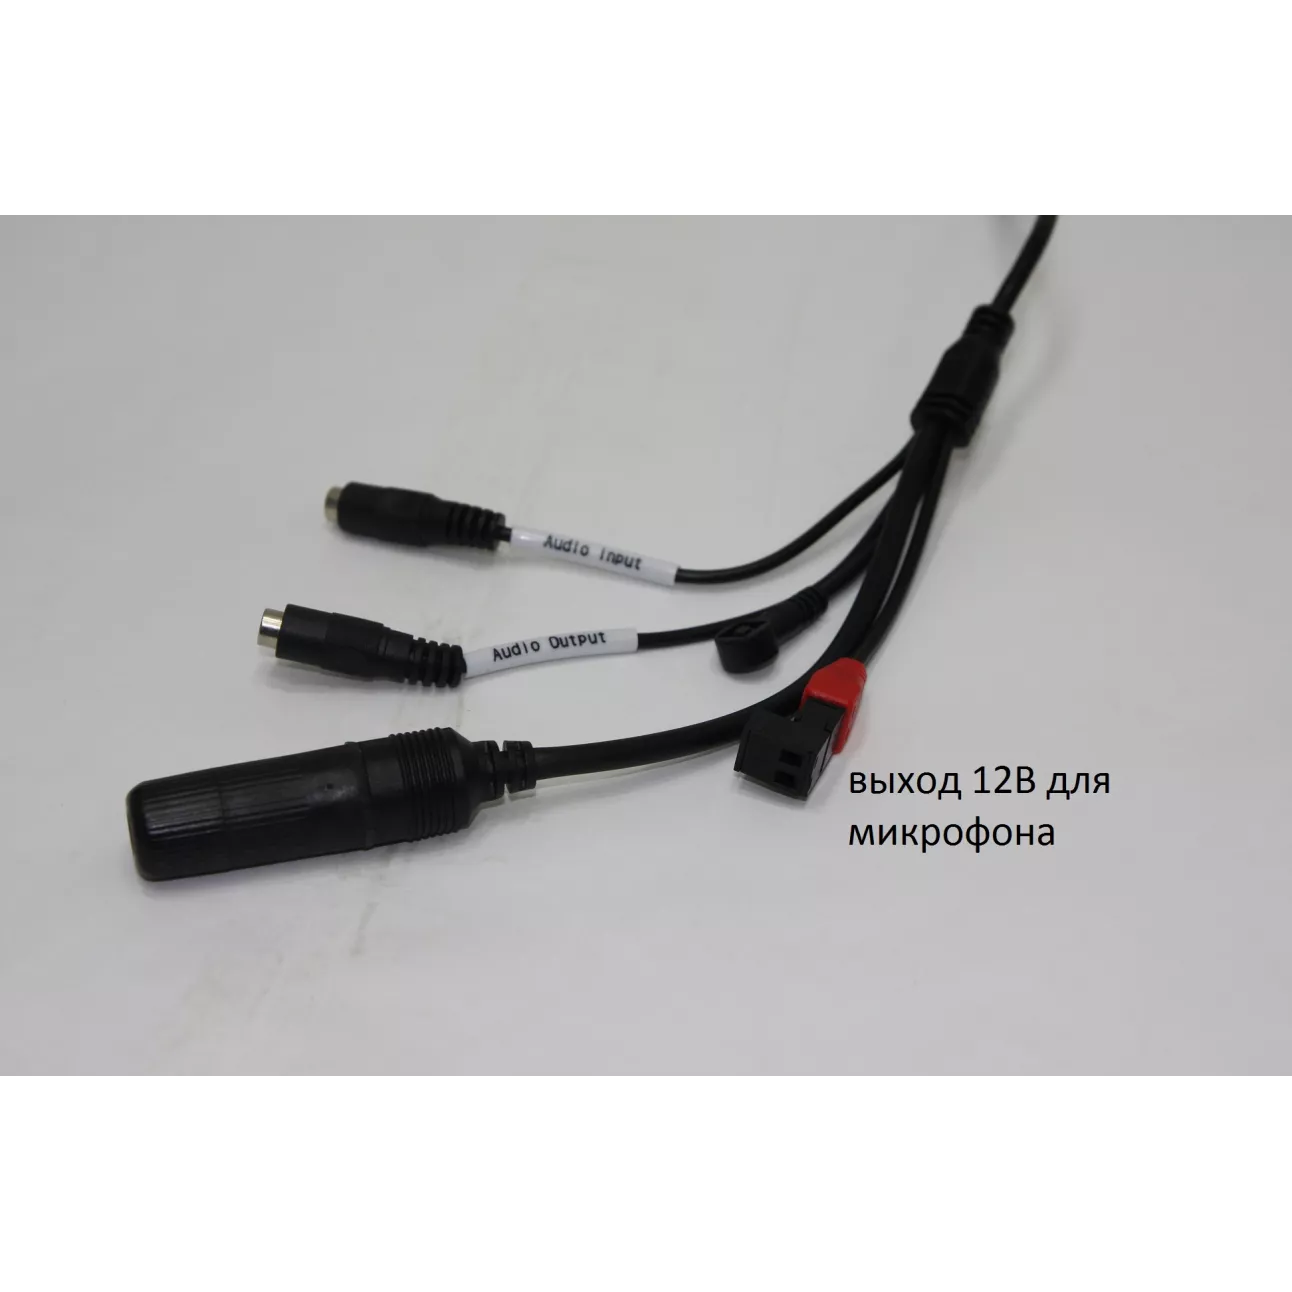 IP камера OMNY 222 уличная 1080p, c ИК подсветкой, 2.8-12мм, PoE, аудио, с кронштейном